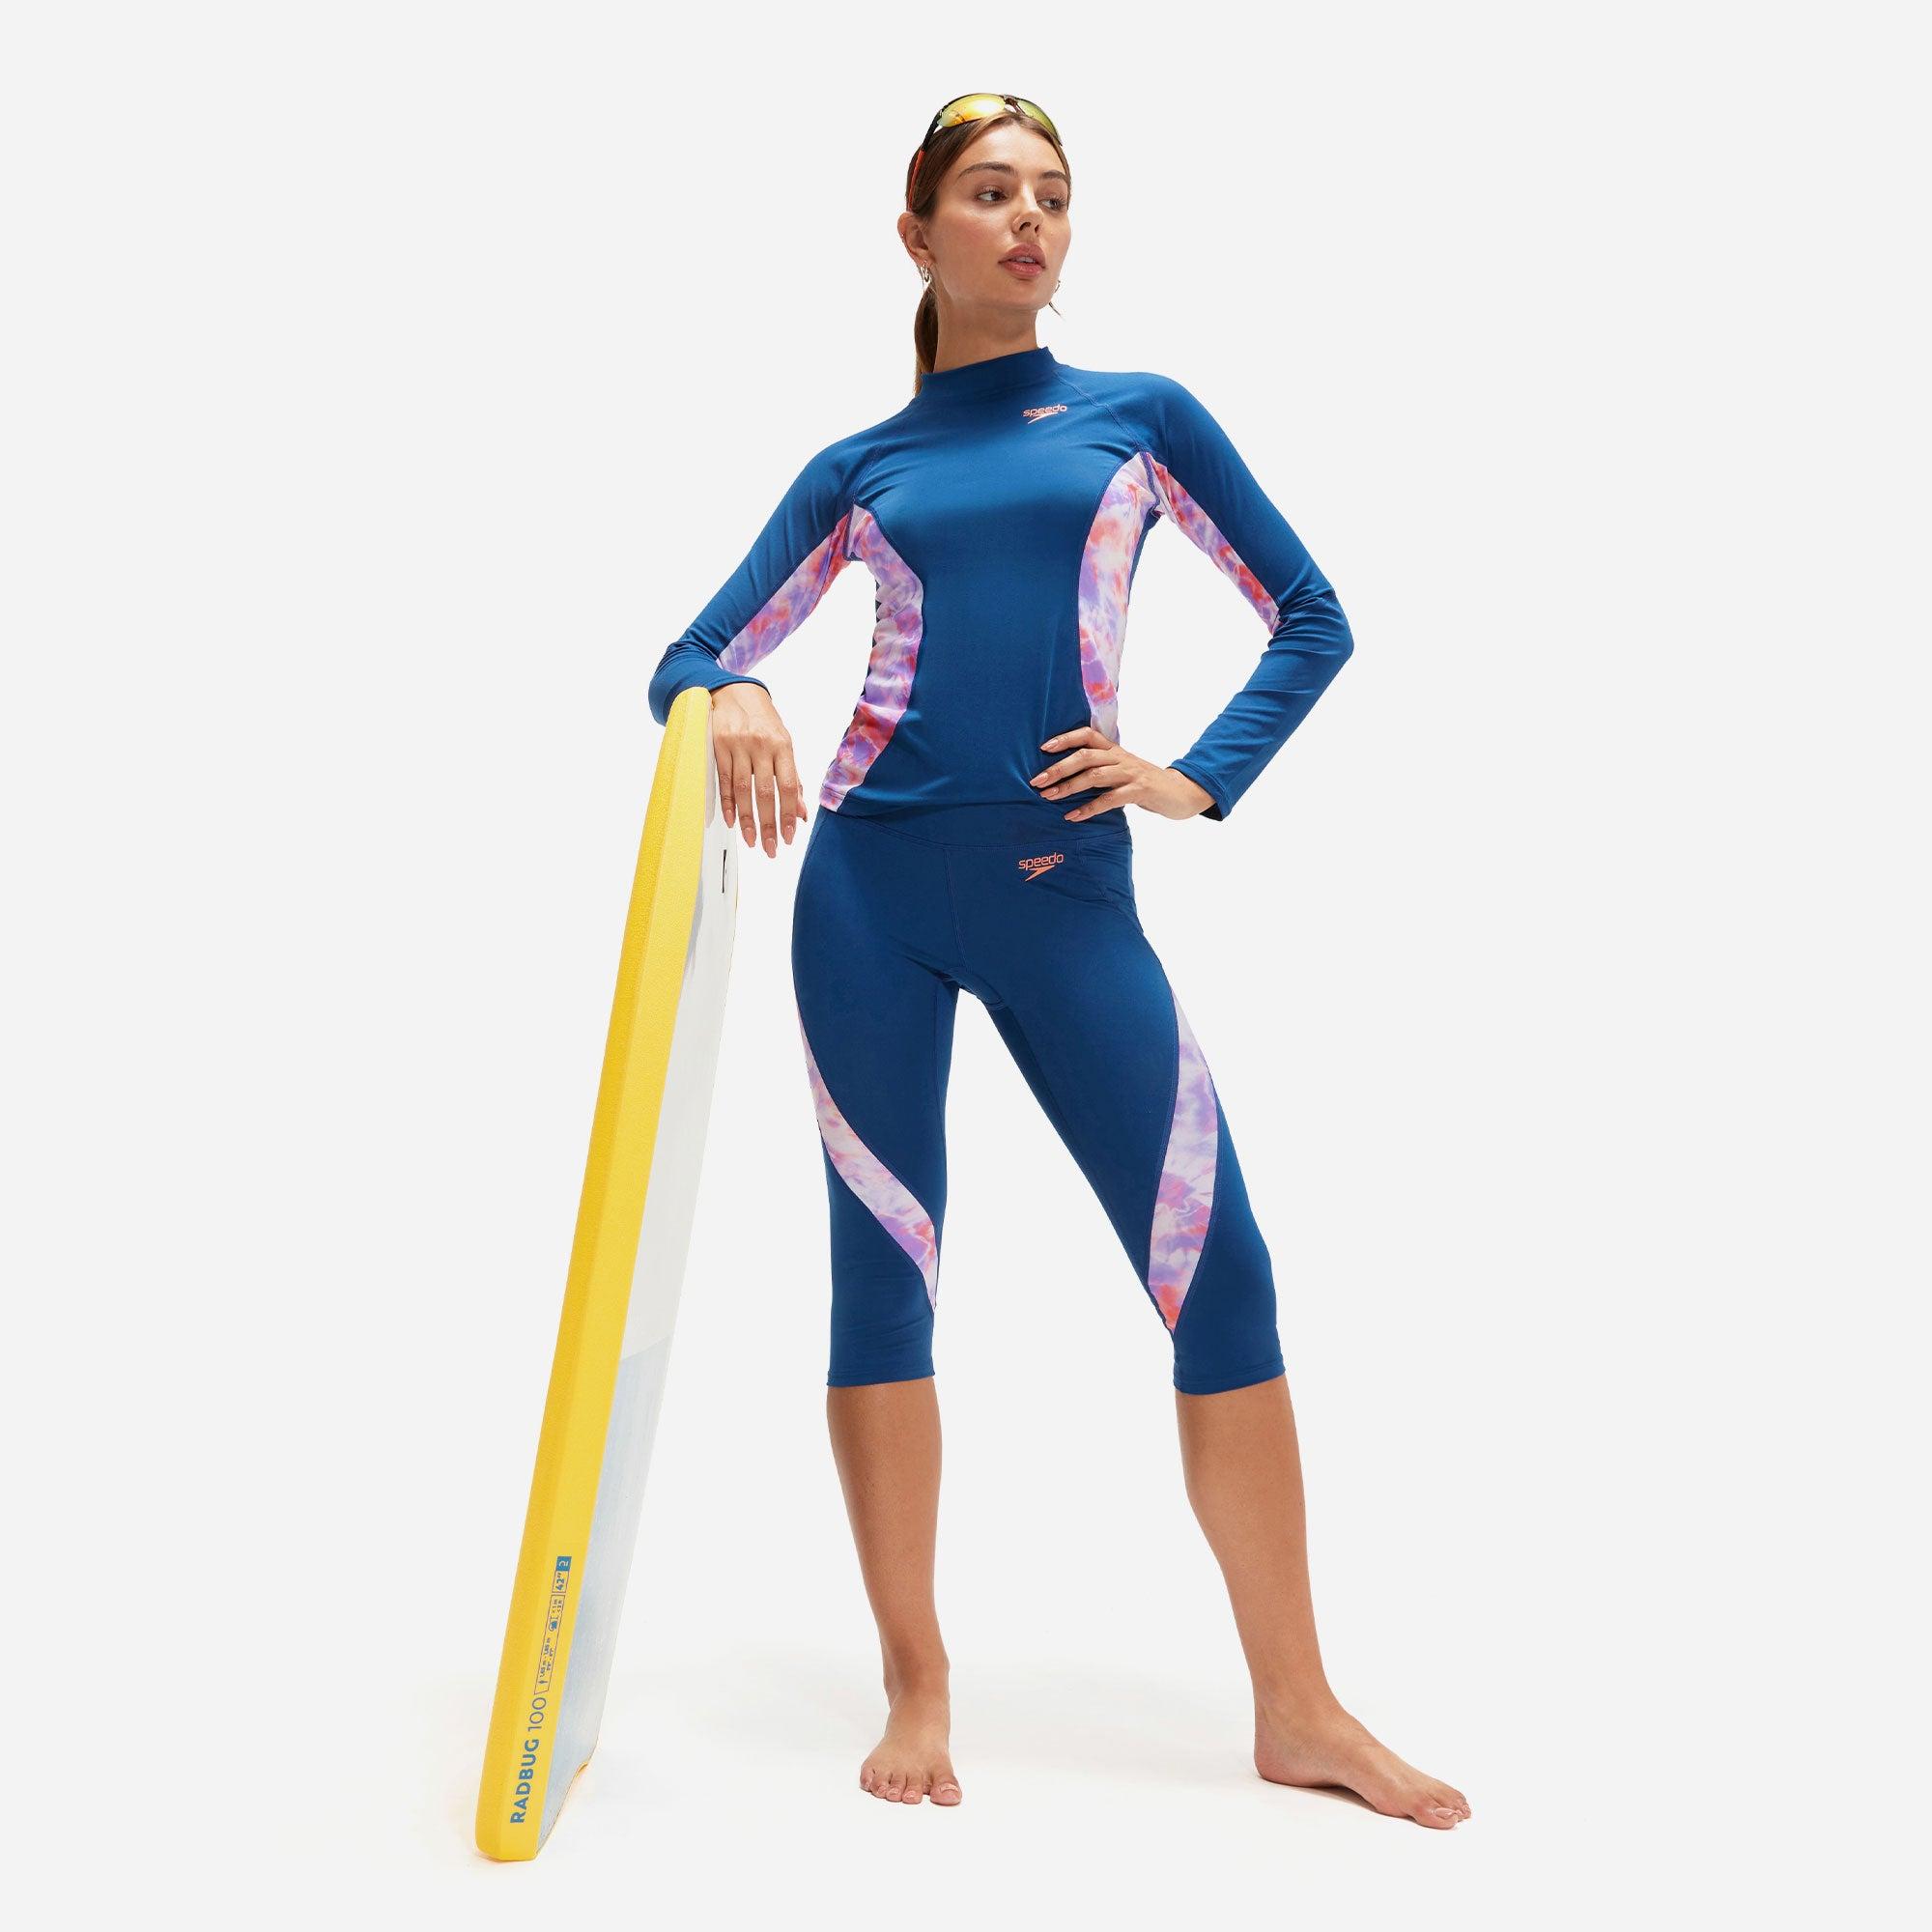 Áo bơi chống nắng nữ Speedo Prt Spl (A) - 8-1352214496